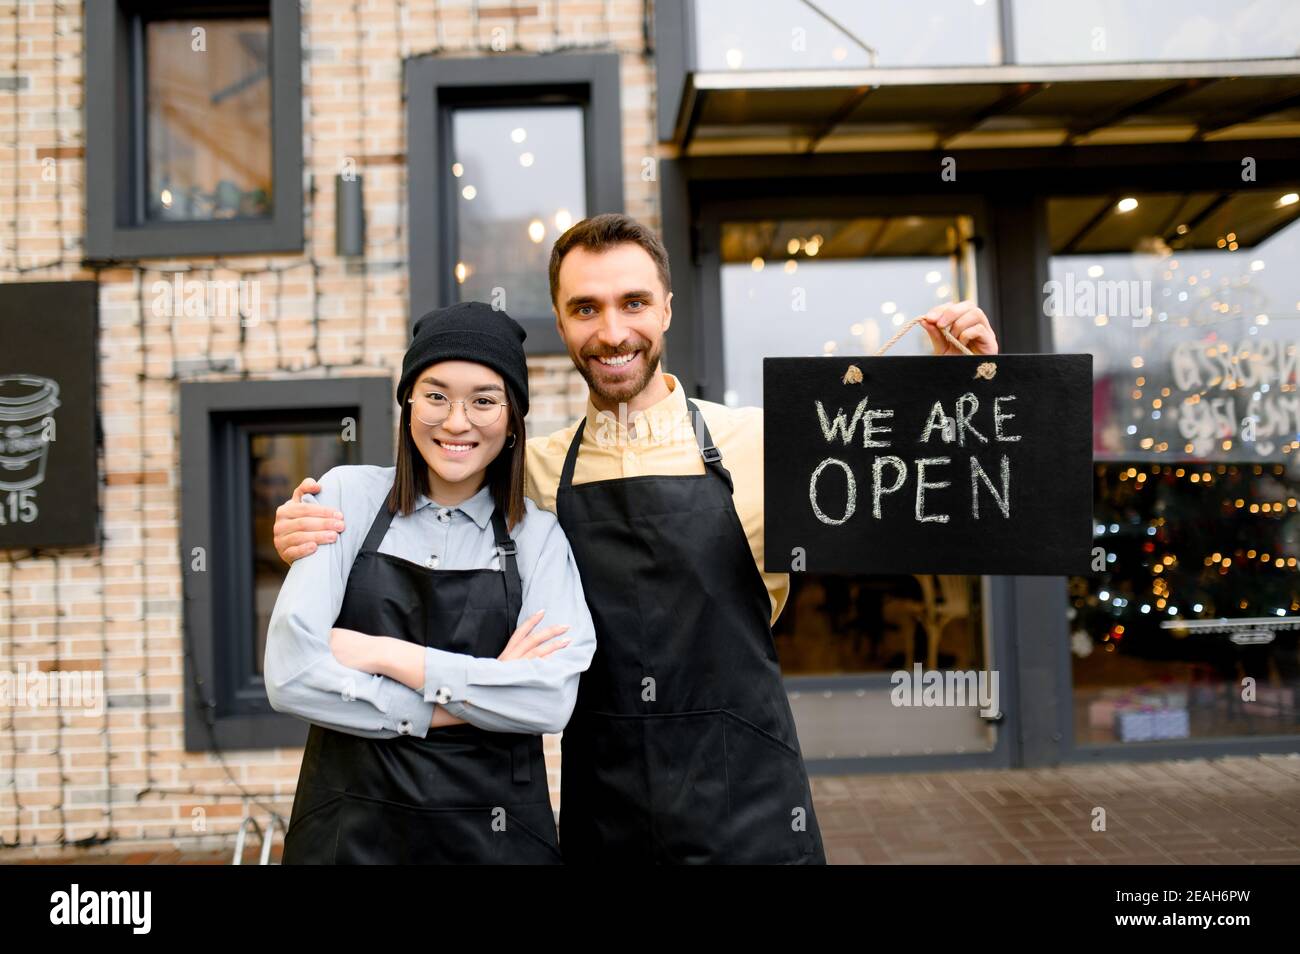 Wir sind OFFEN. Zwei multirassische freundliche Kellner in Uniform stehen vor einem Restaurant, Café oder Bar, zeigen Schild OFFEN, mit einem angenehmen Lächeln, Herzlich Willkommen. Teamwork-Konzept Stockfoto